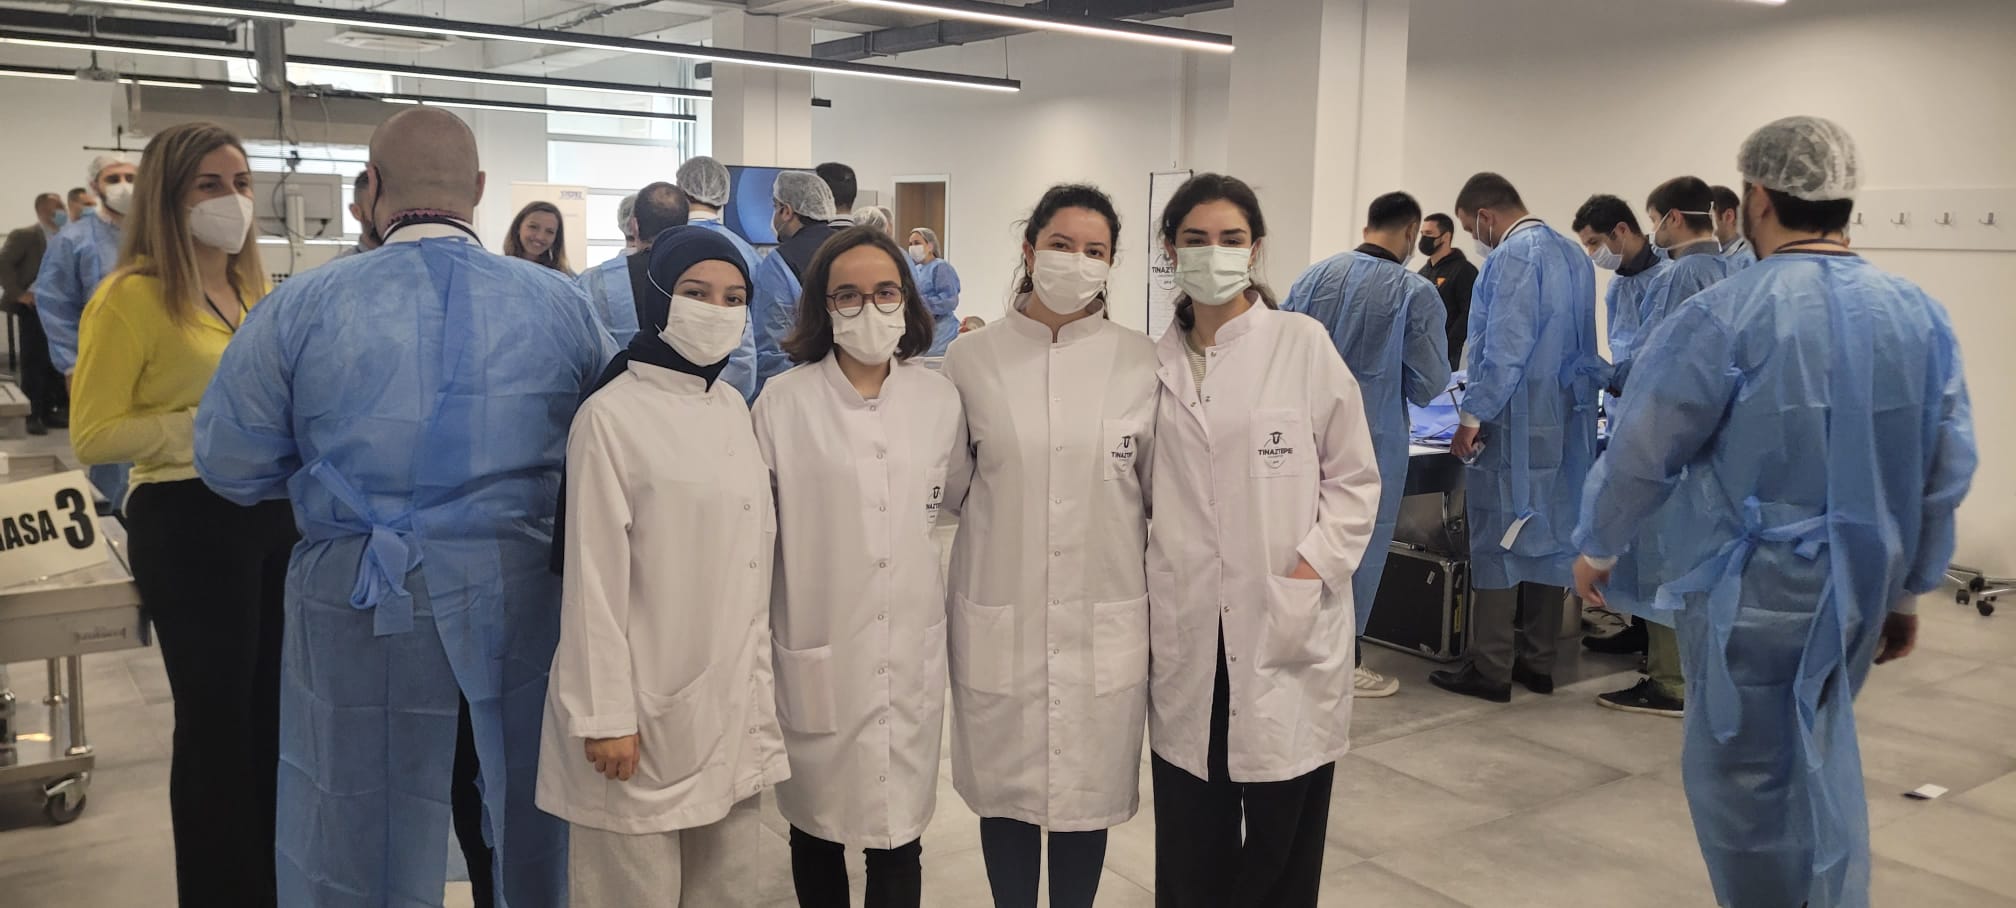   İzmir Tınaztepe Üniversitesinde Cerrahlar Anatomi Eğitiminde  Bir Araya Geldi